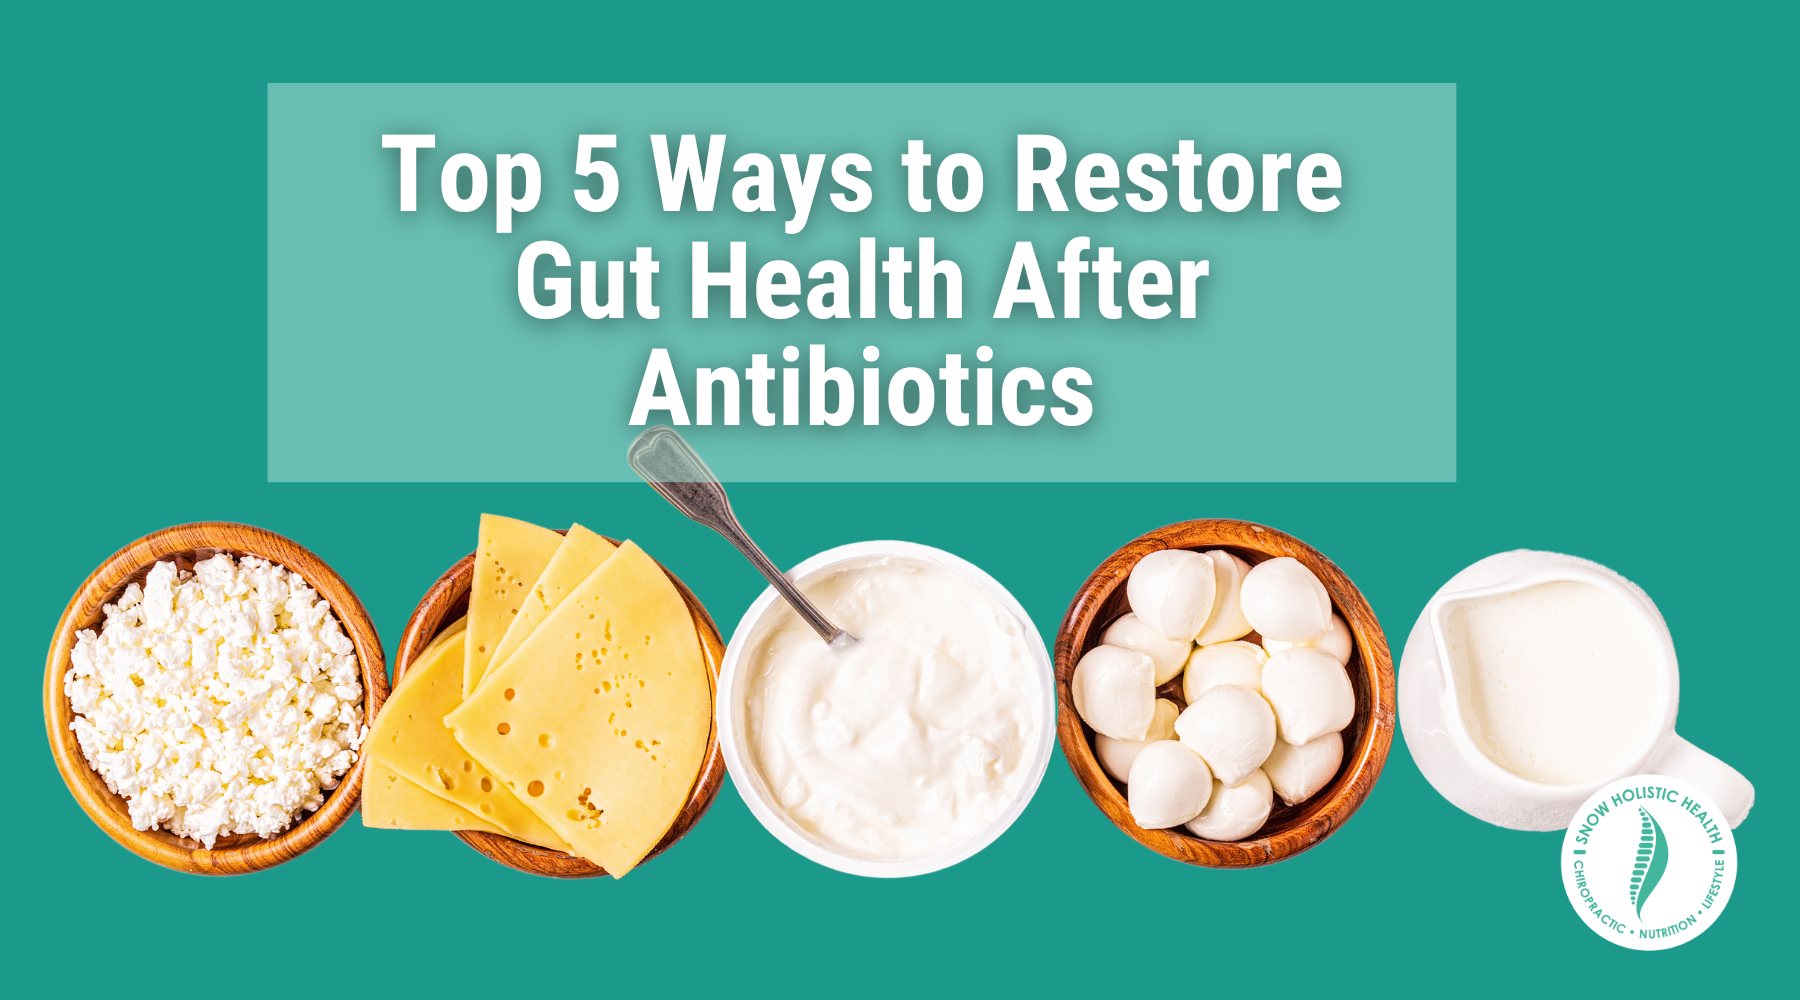 Caption: Top 5 Ways to Restores Gut Health After Antibiotics over line-up of probiotic foods